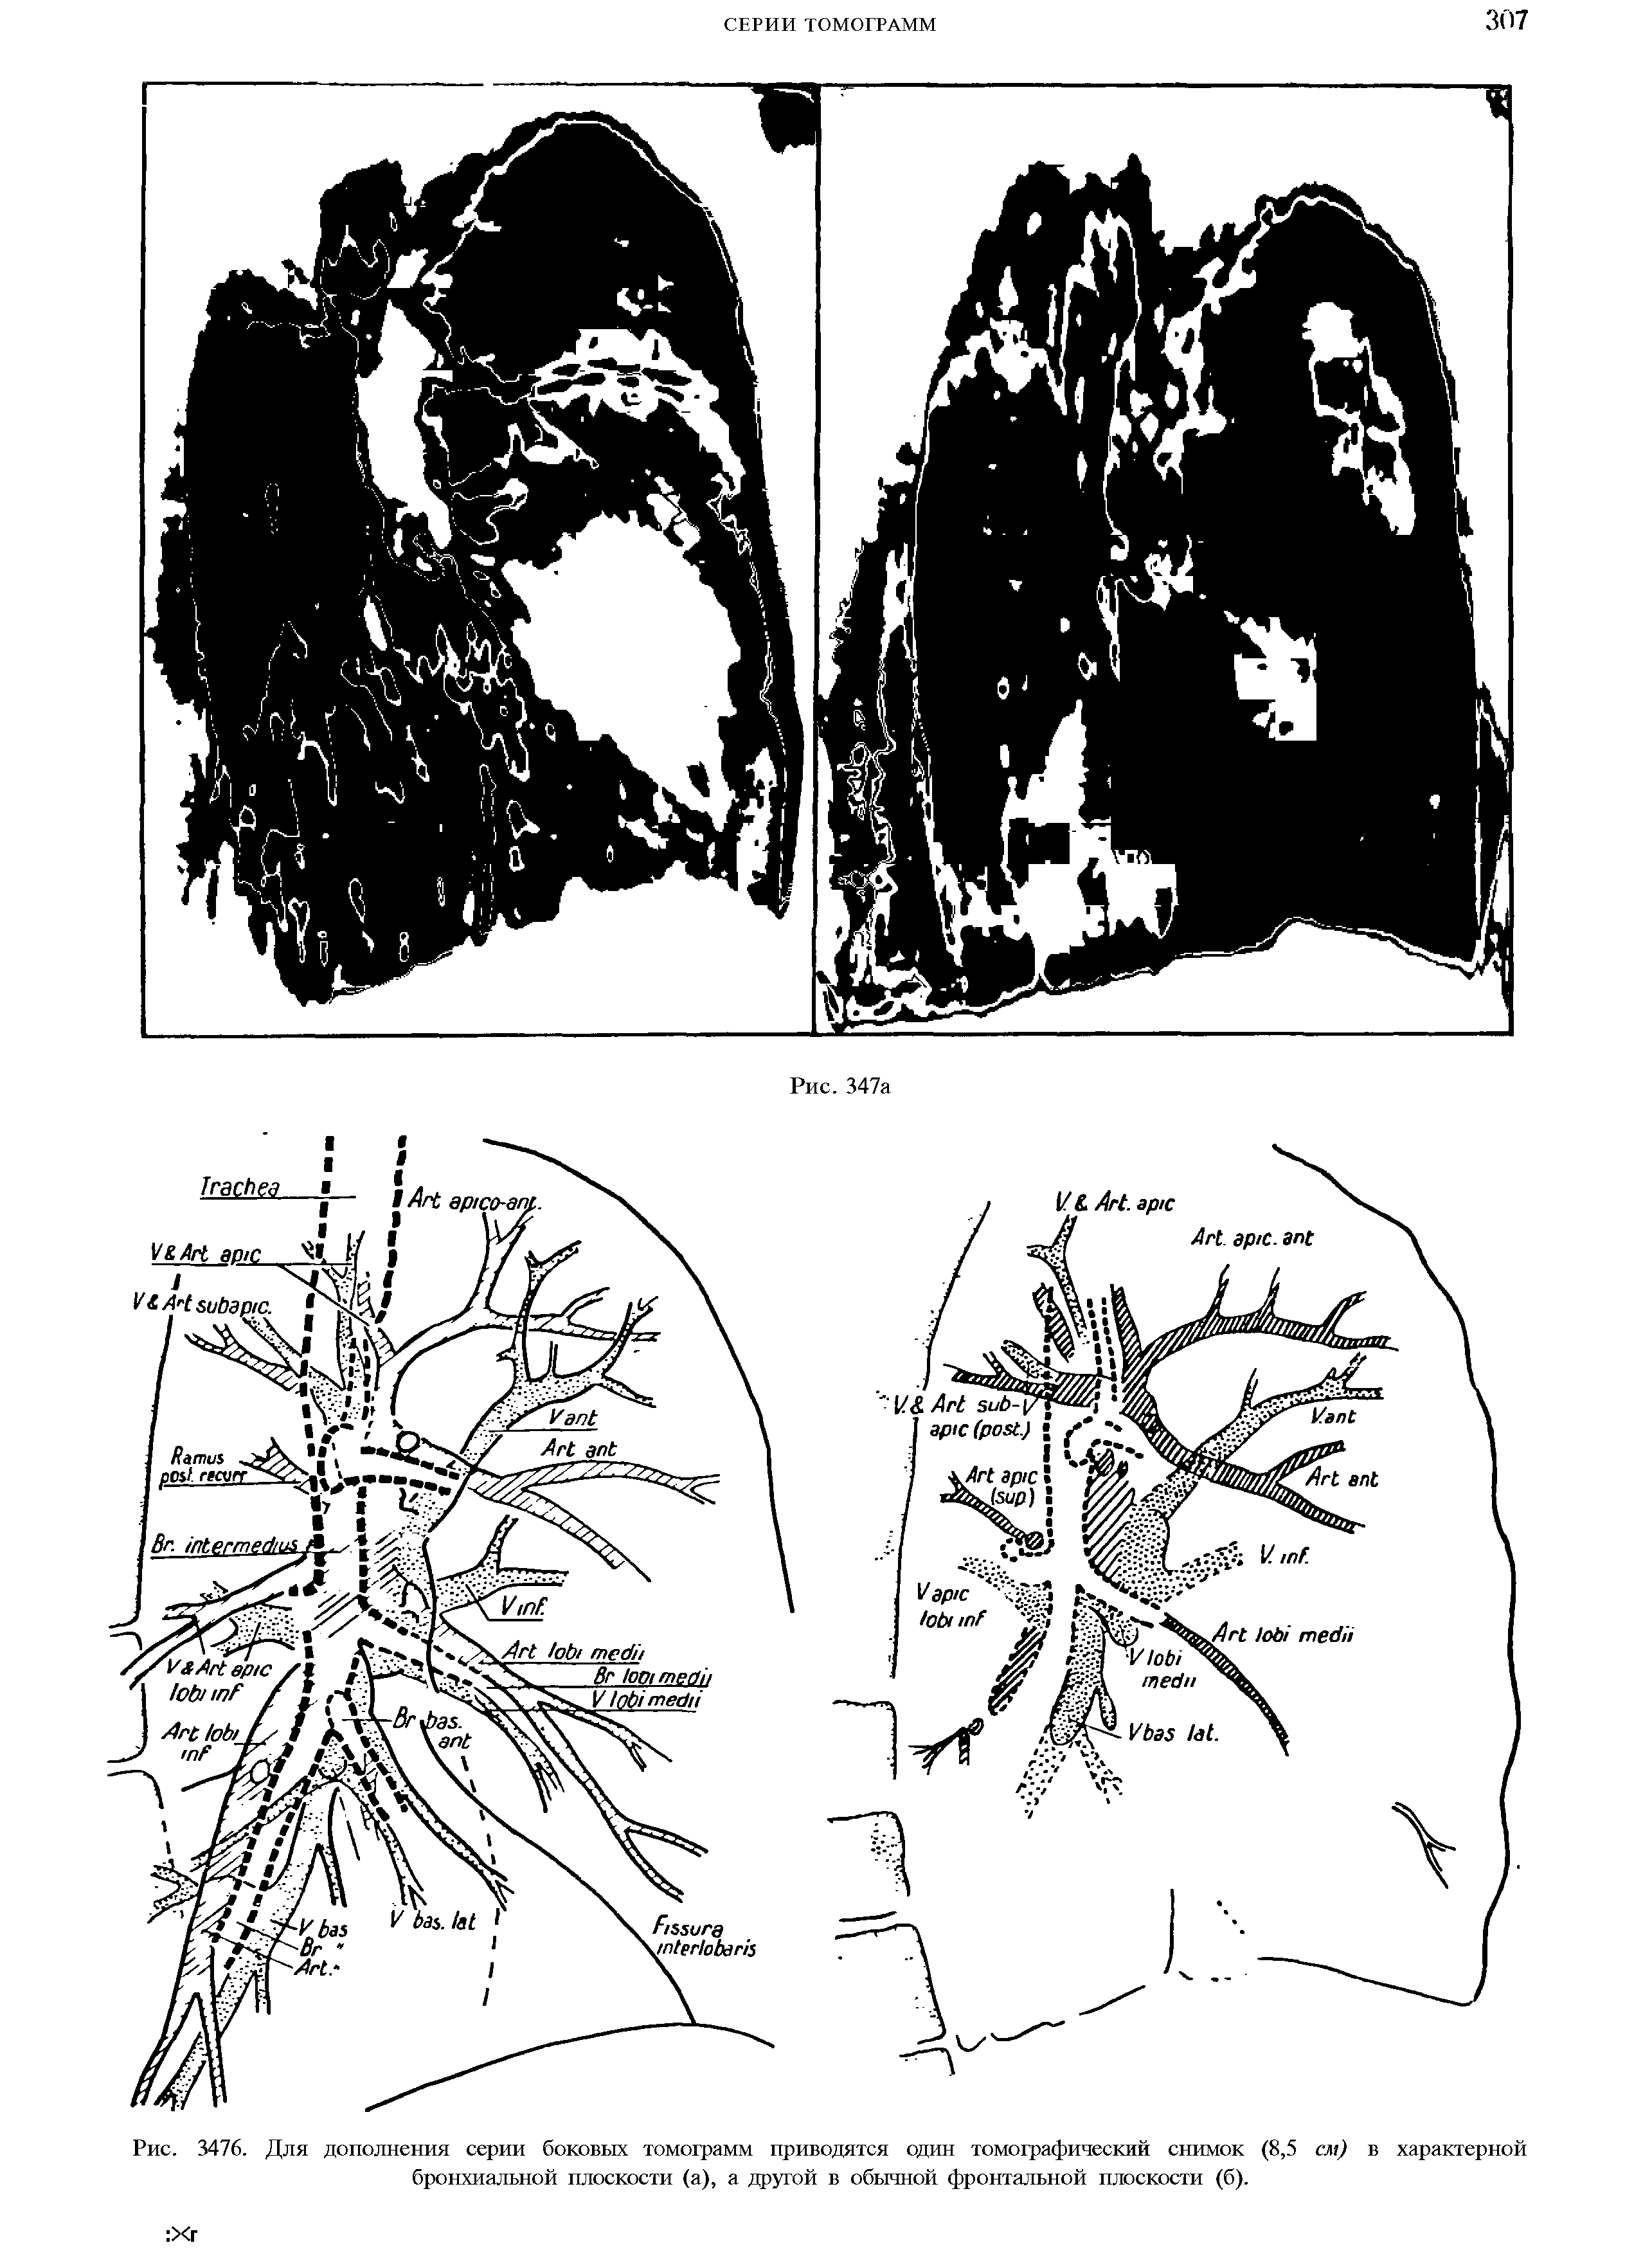 Рис. 3476. Для дополнения серии боковых томограмм приводятся один томографический снимок (8,5 см) в характерной бронхиальной плоскости (а), а другой в обычной фронтальной плоскости (б).